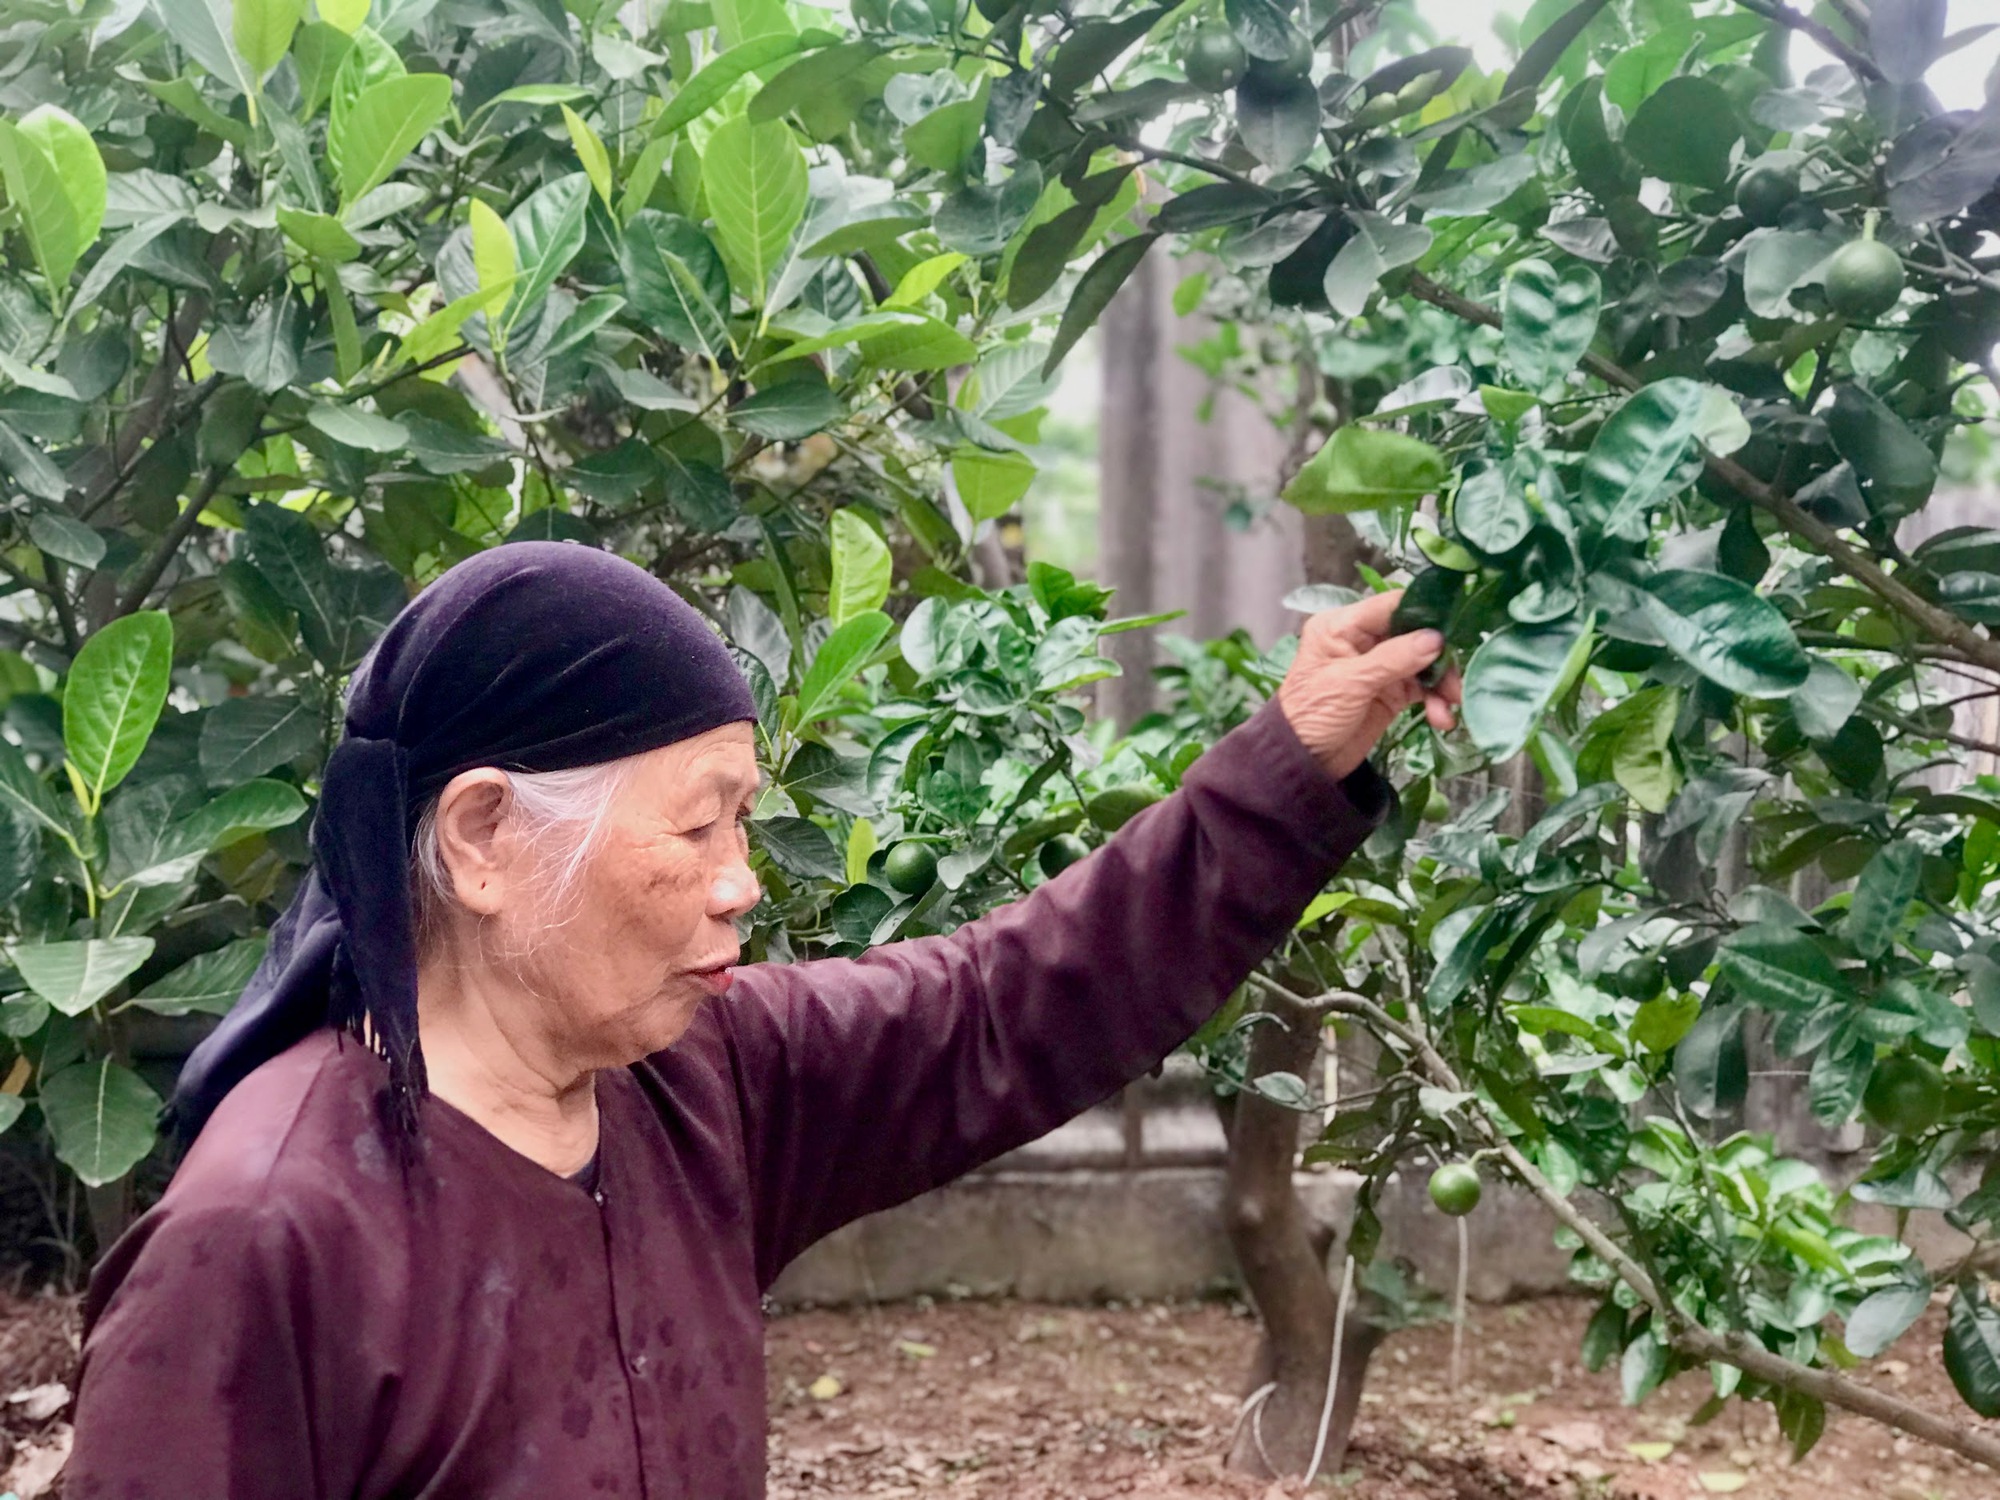 Hà Nội: Cụ bà 88 tuổi chia sẻ bí quyết trồng bưởi Diễn ngọt lừ, bán giá cao khách cũng đặt mua hết - Ảnh 6.